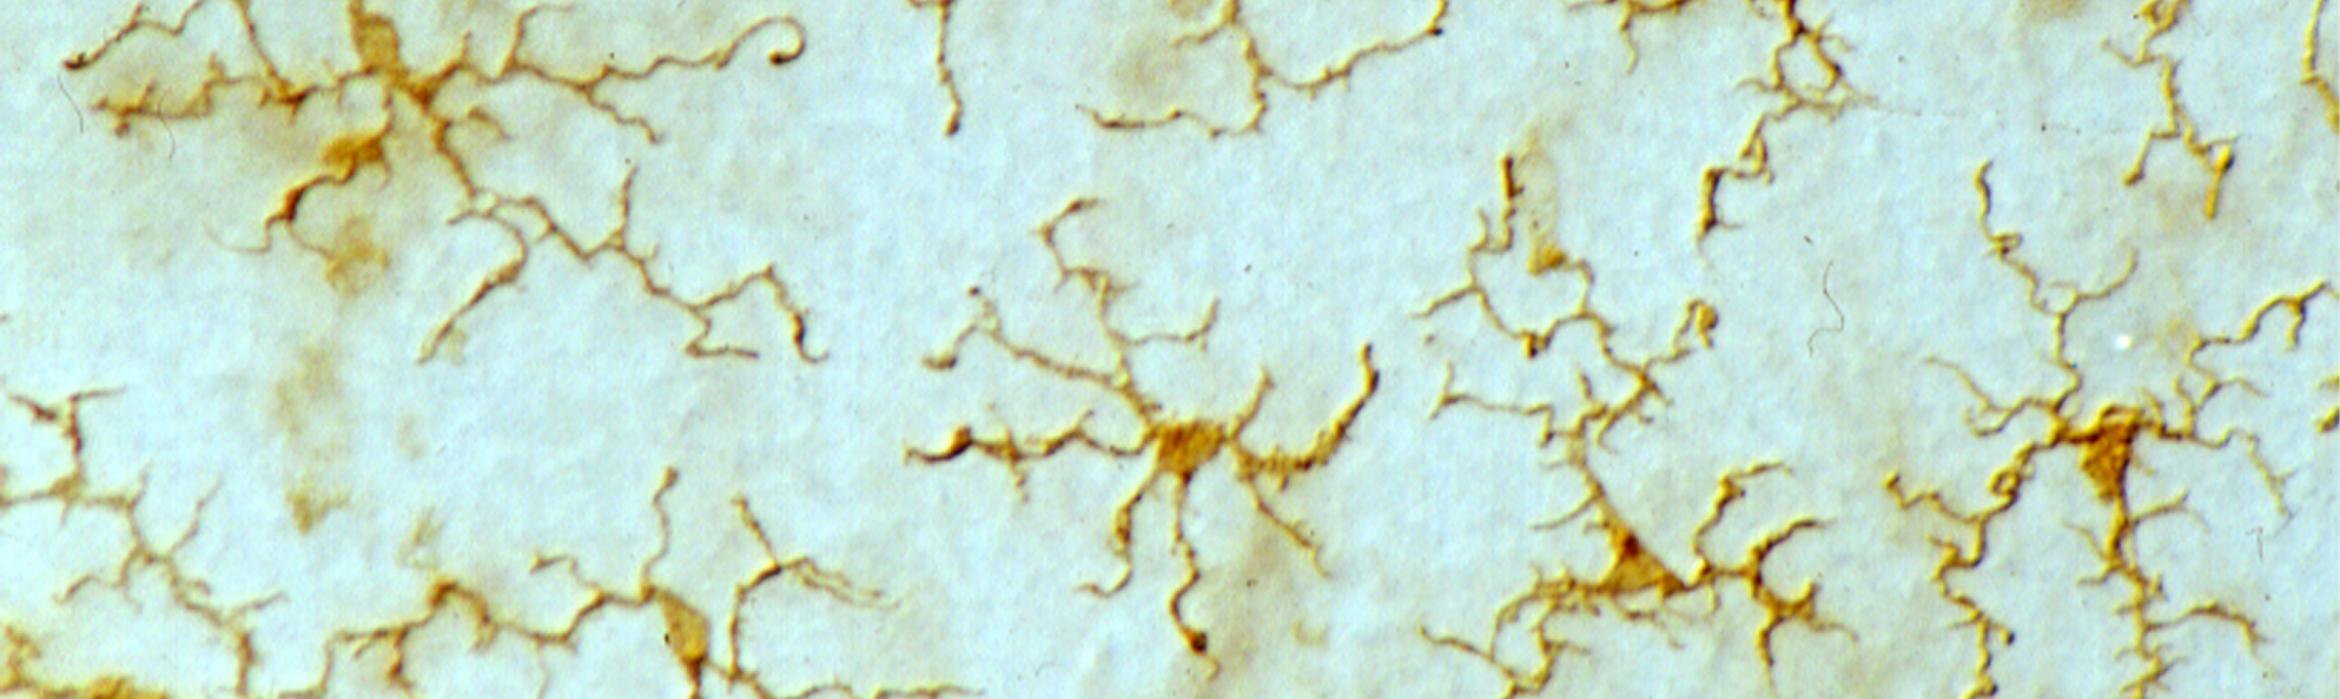 Imagen microglia